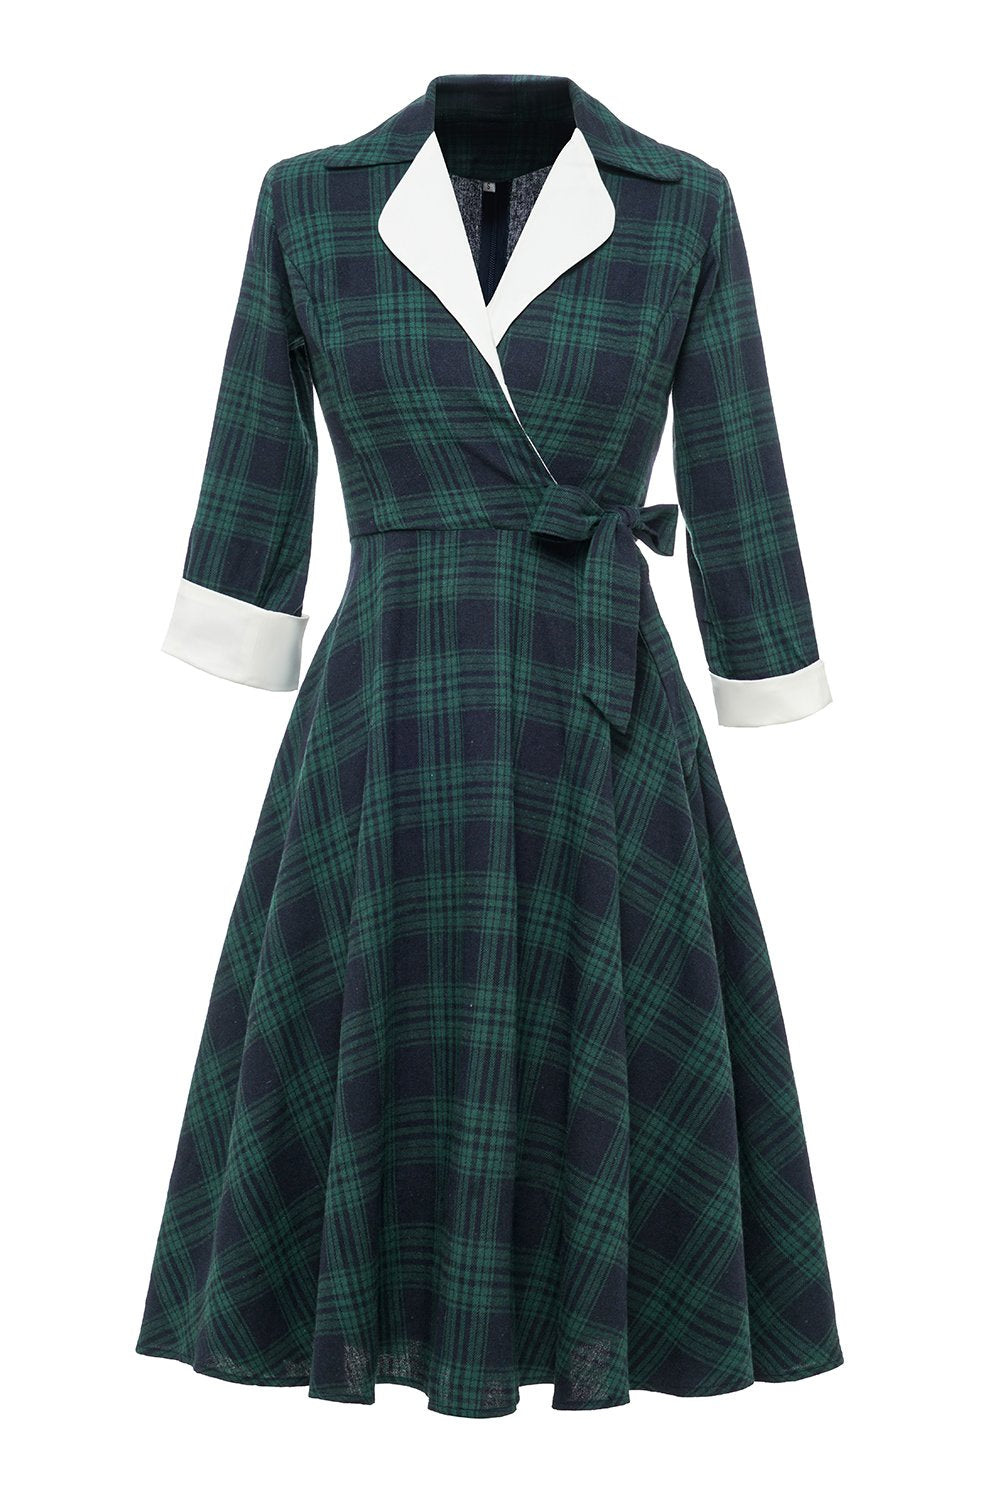 Grön pläd vintage 1950-talet klänning